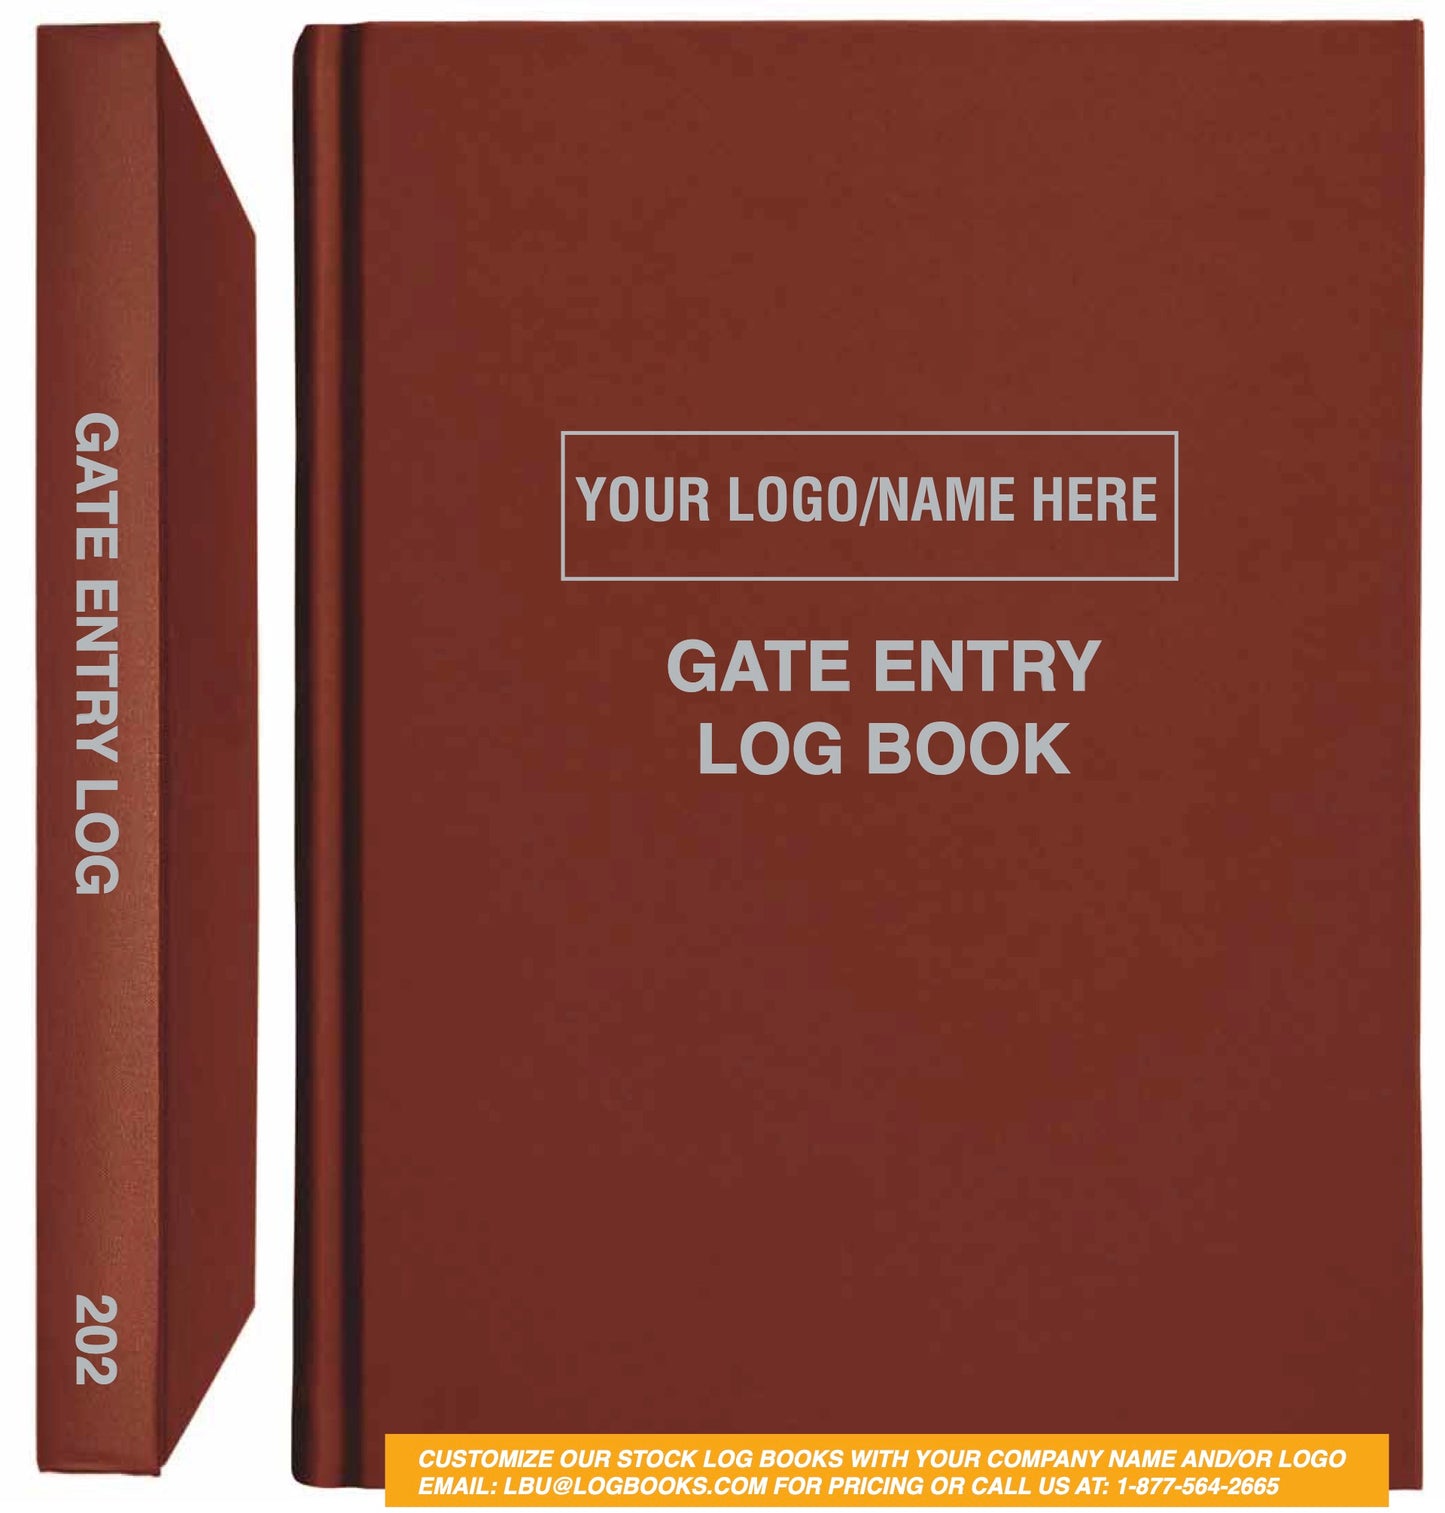 Gate Entry Log Book